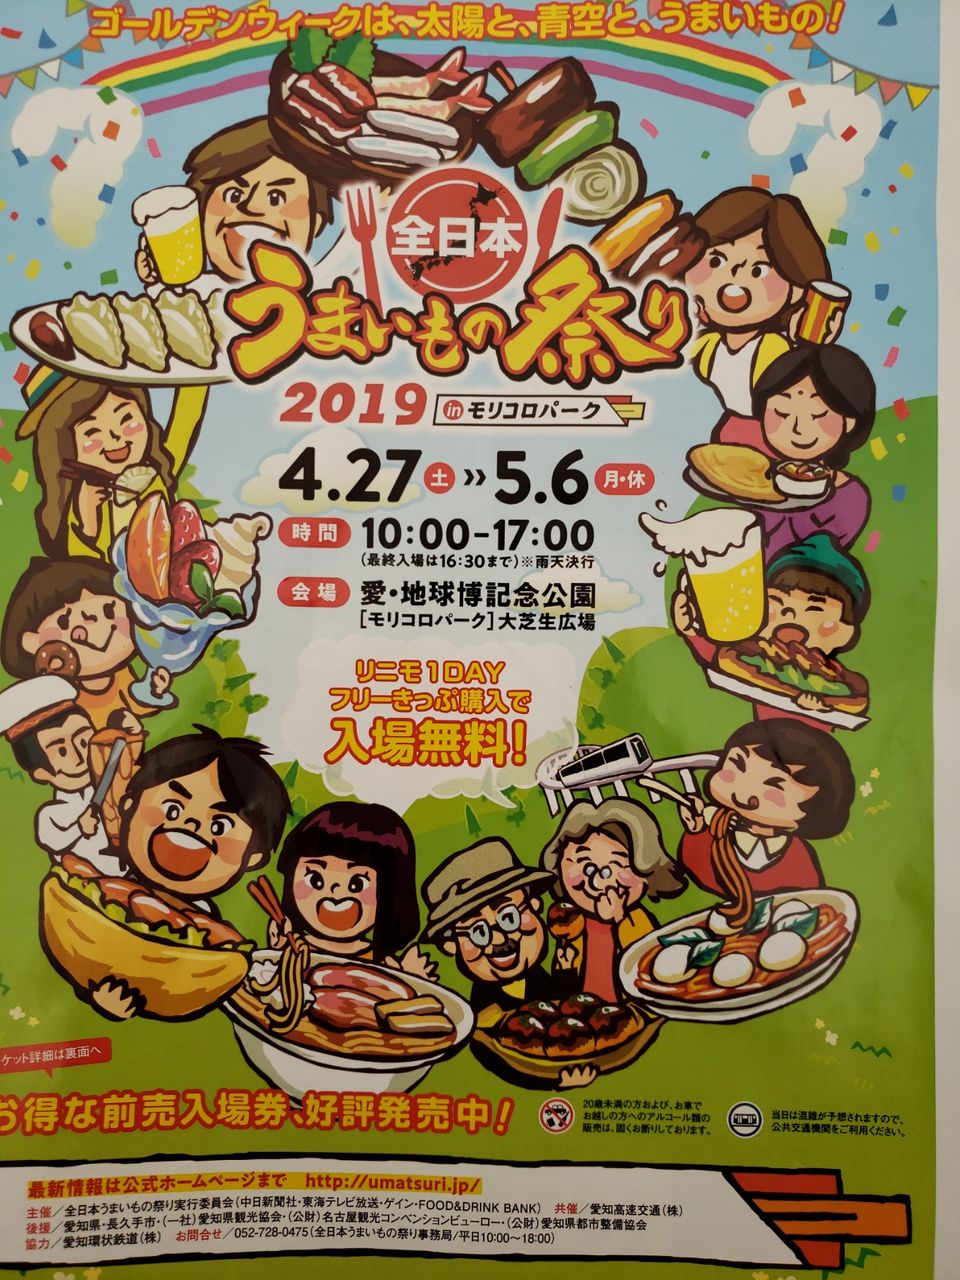 モリコロパーク全日本うまいもの祭り19 馬刺し 馬油 馬串の小山商店 催事情報